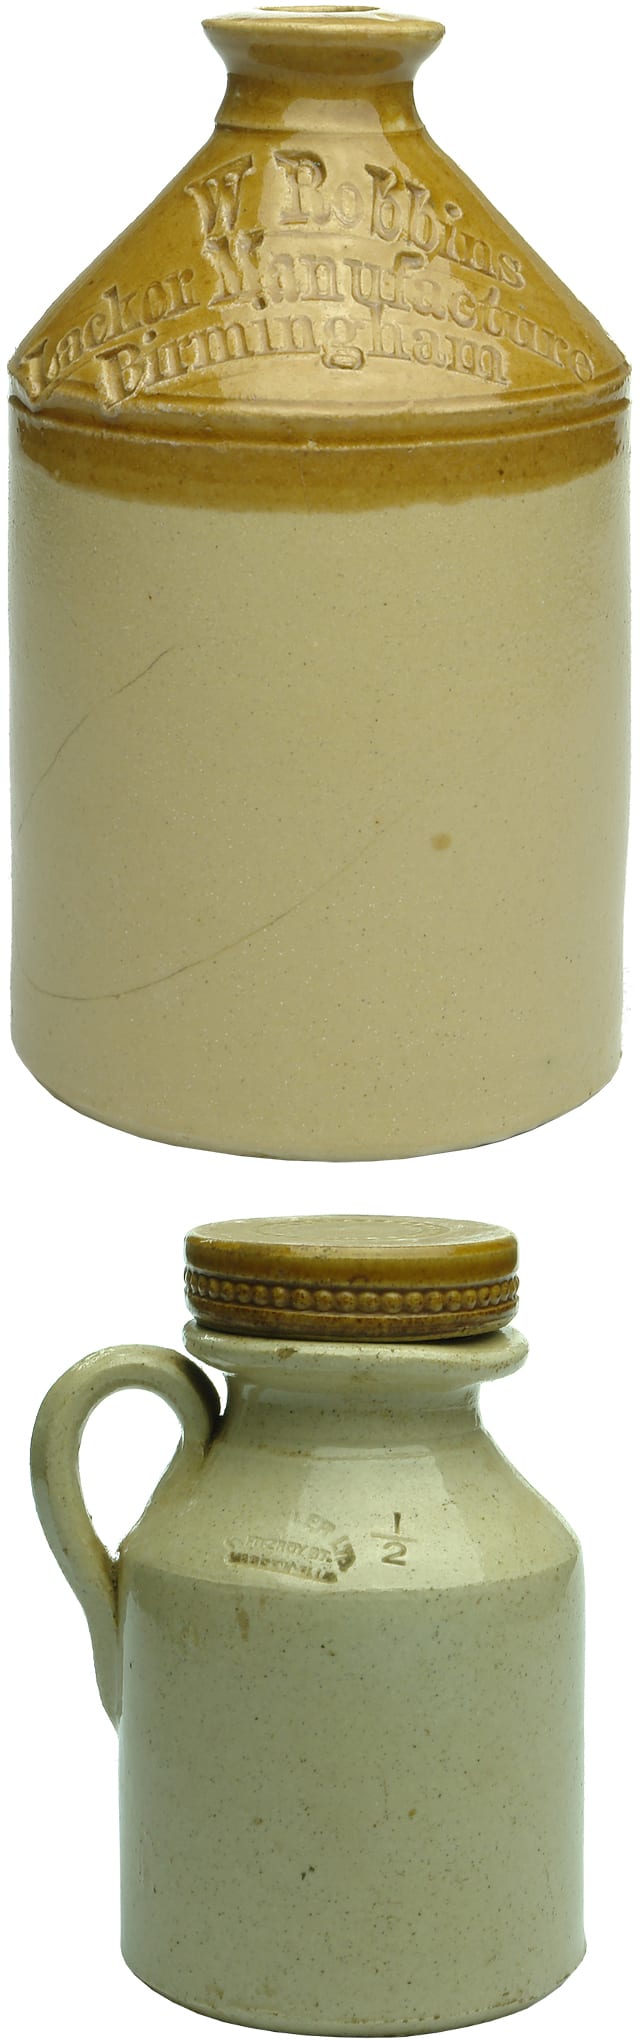 Small Stoneware Demijohns